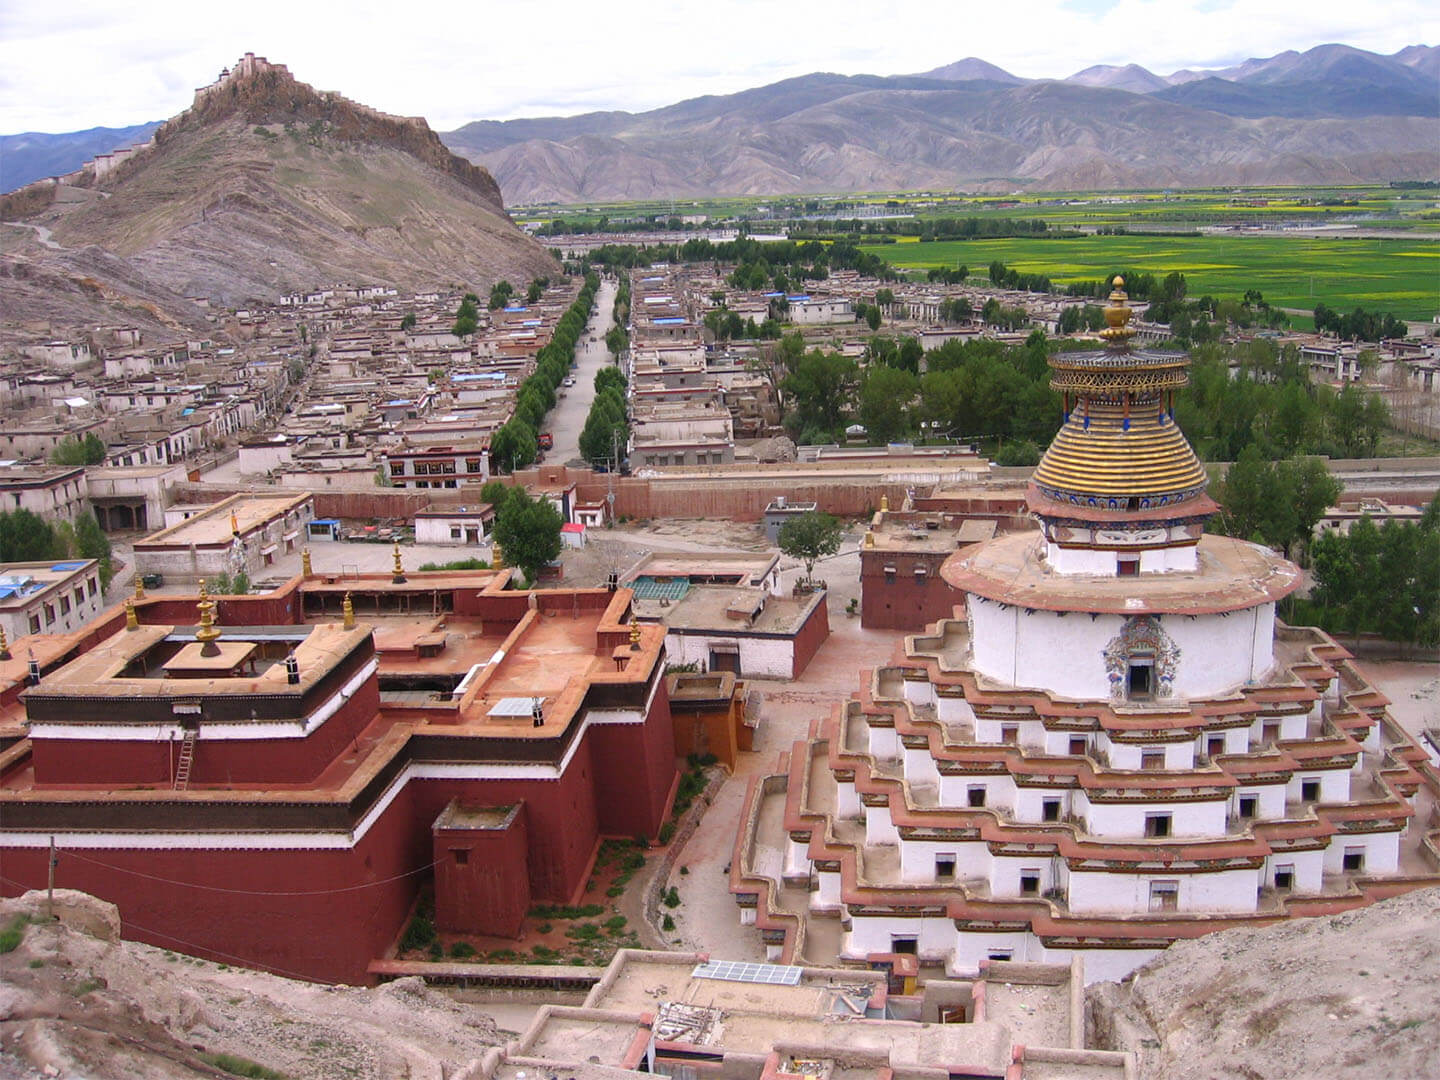 Gyangtse Kumbum stupa & Phelchoe monastery